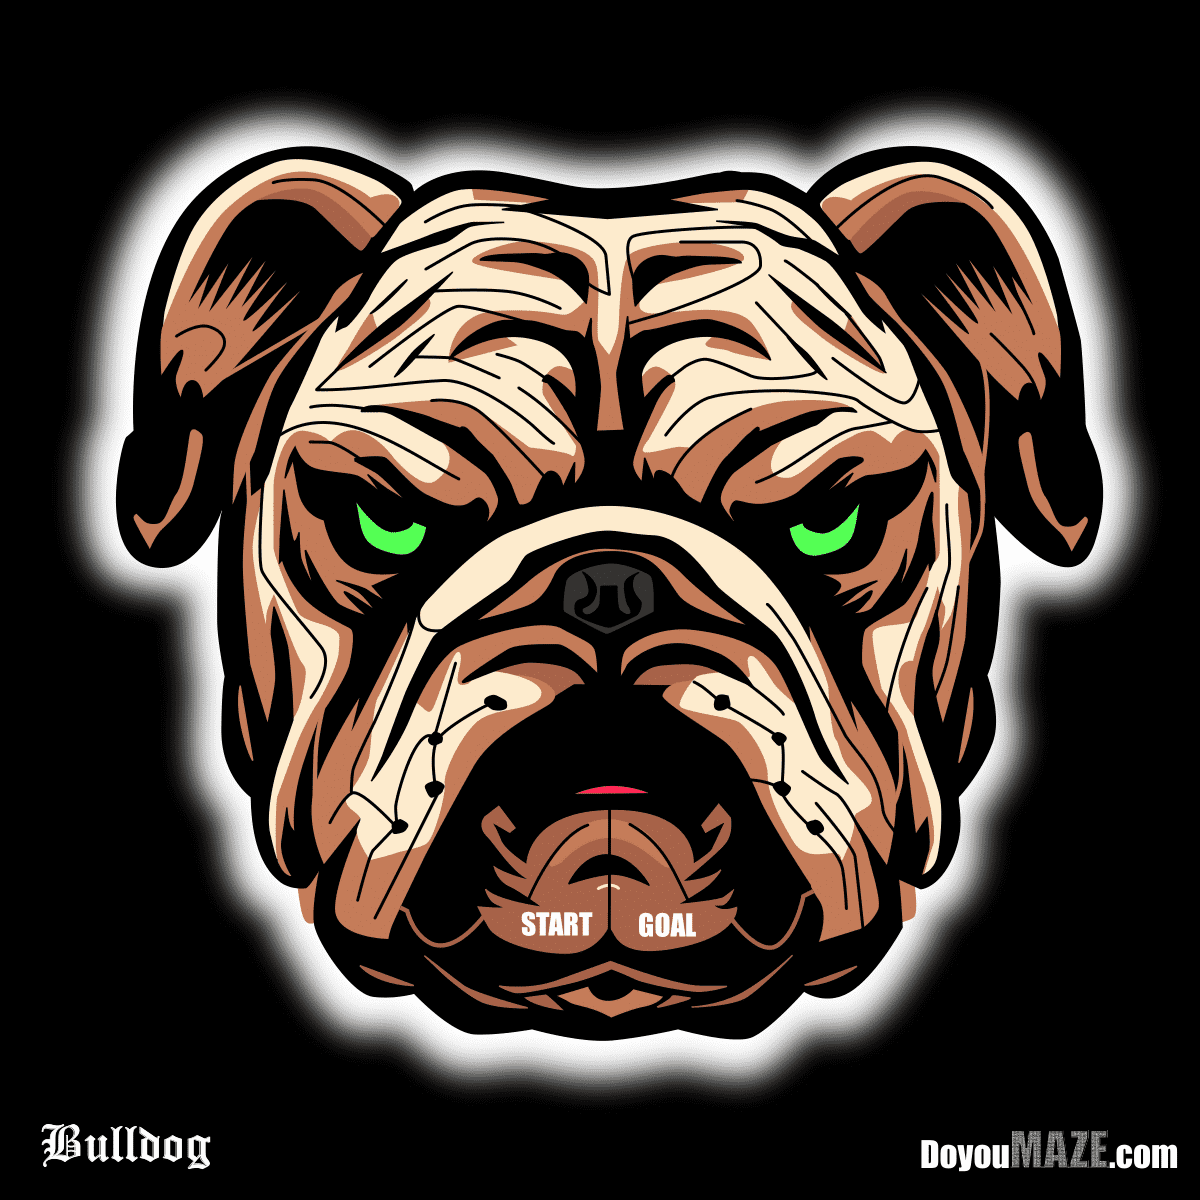 12 Bulldog Maze 50-min.png